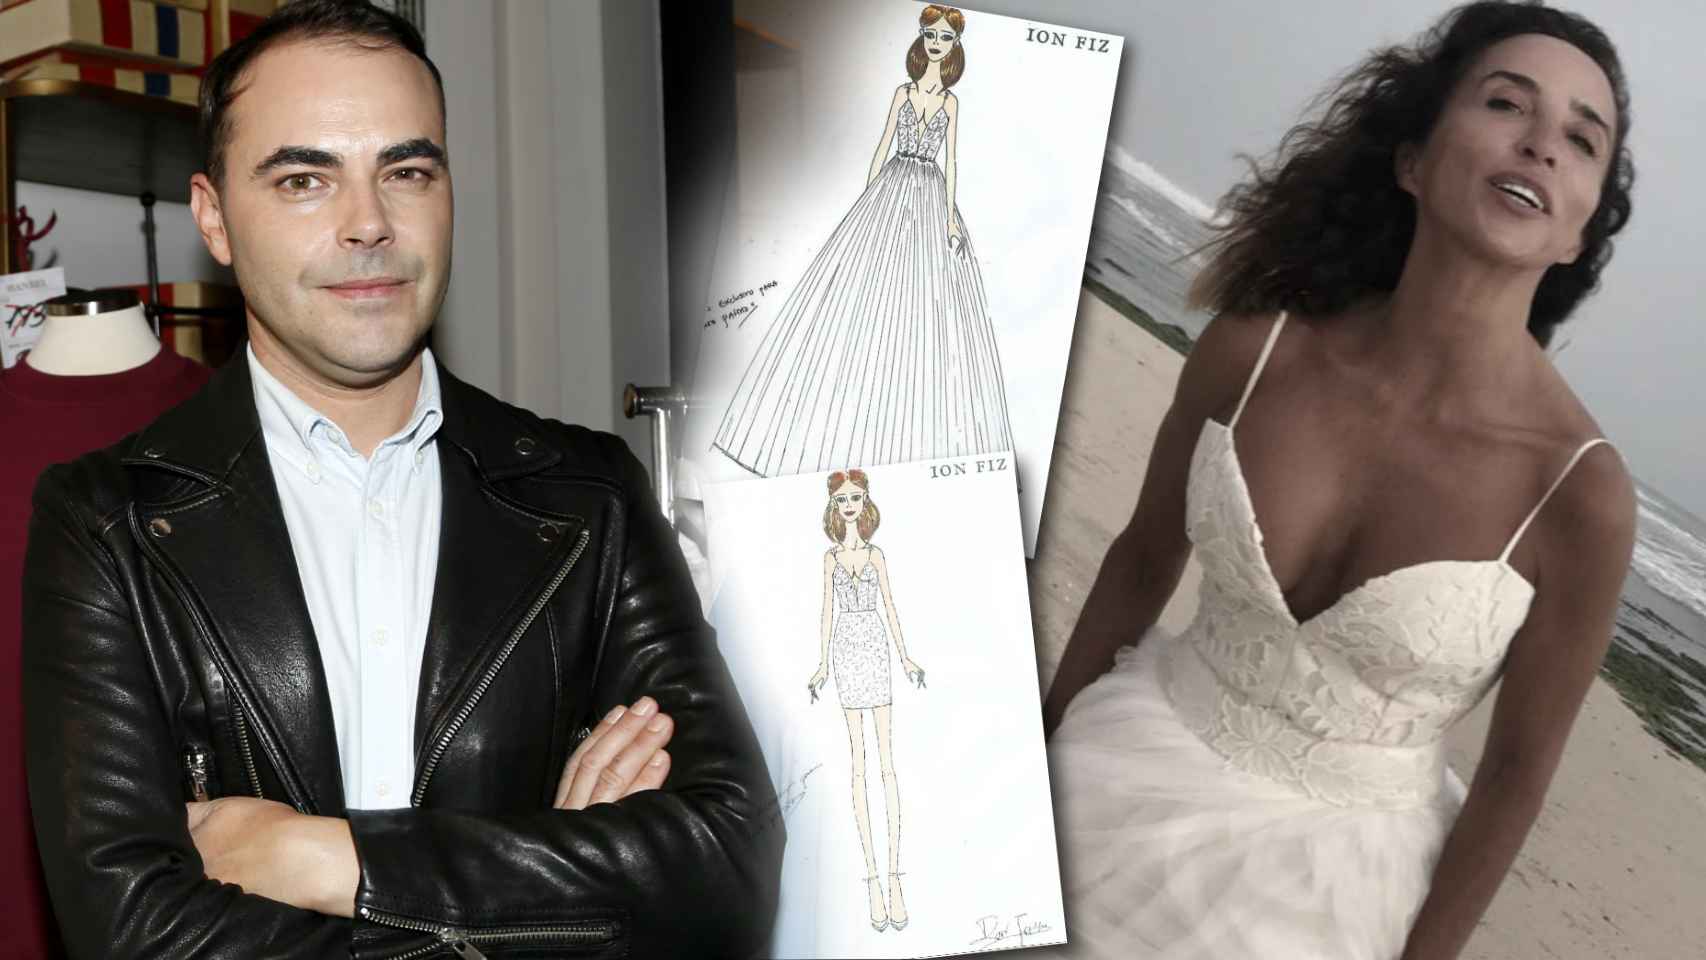 Habla Ion Fiz, creador del vestido de novia de María Patiño: 